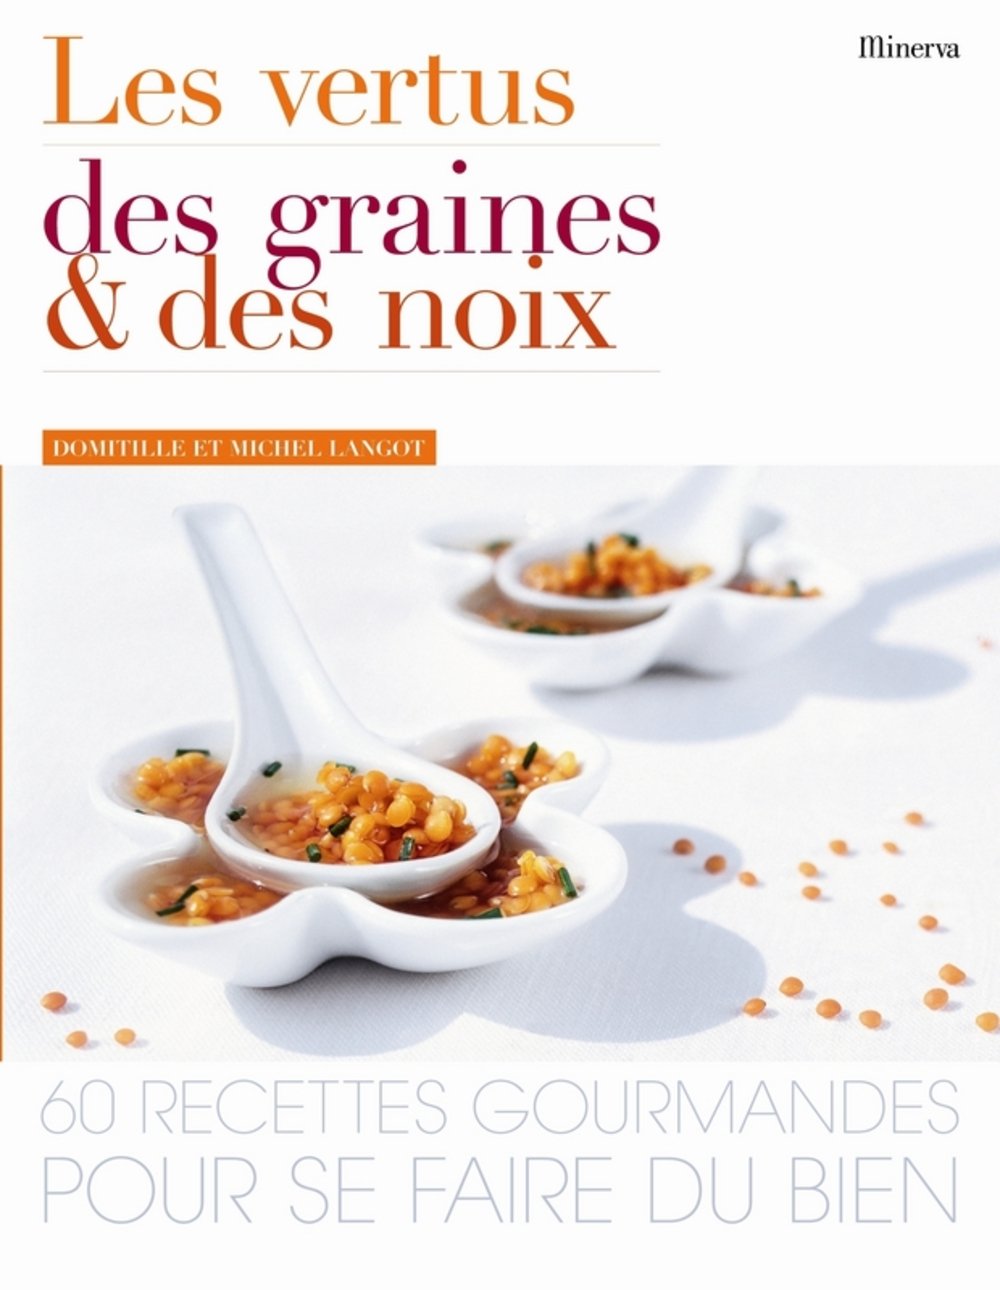 Les vertus des graines et des noix : 60 recettes gourmandes pour se faire du bien - Domitille Langot